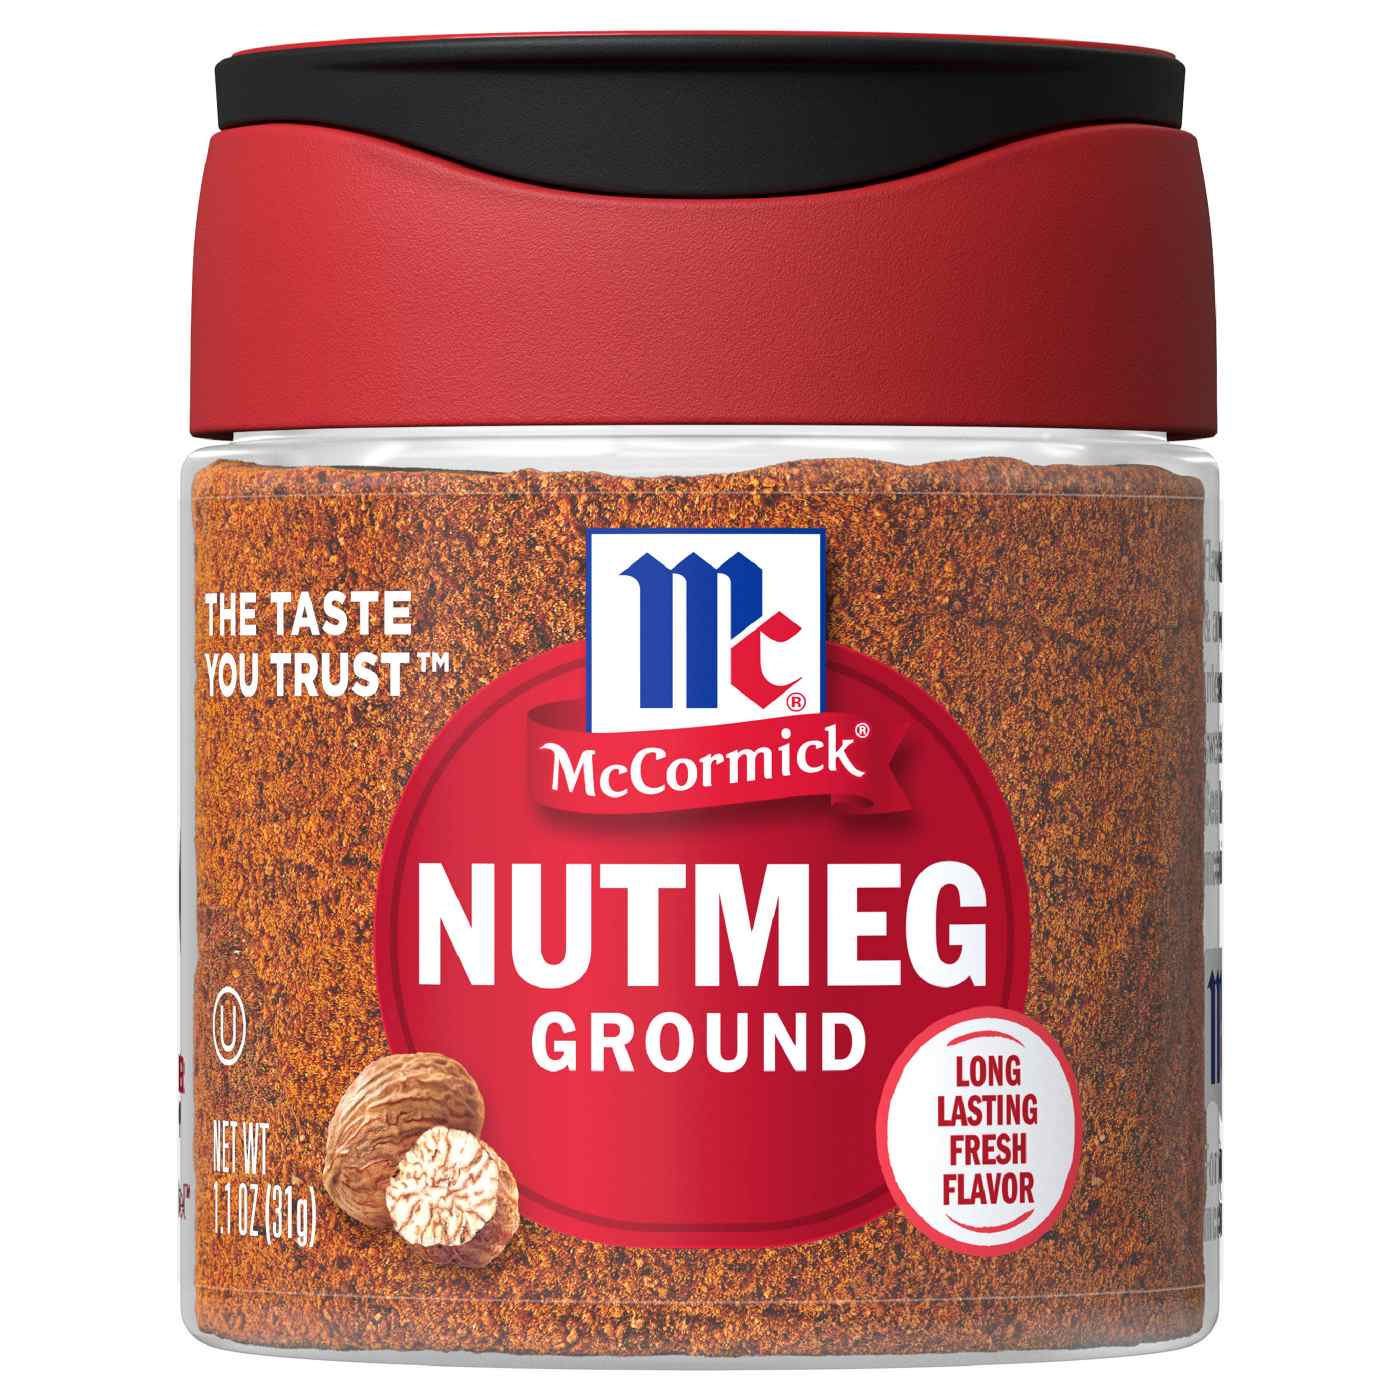 McCormick Ground Nutmeg; image 1 of 8